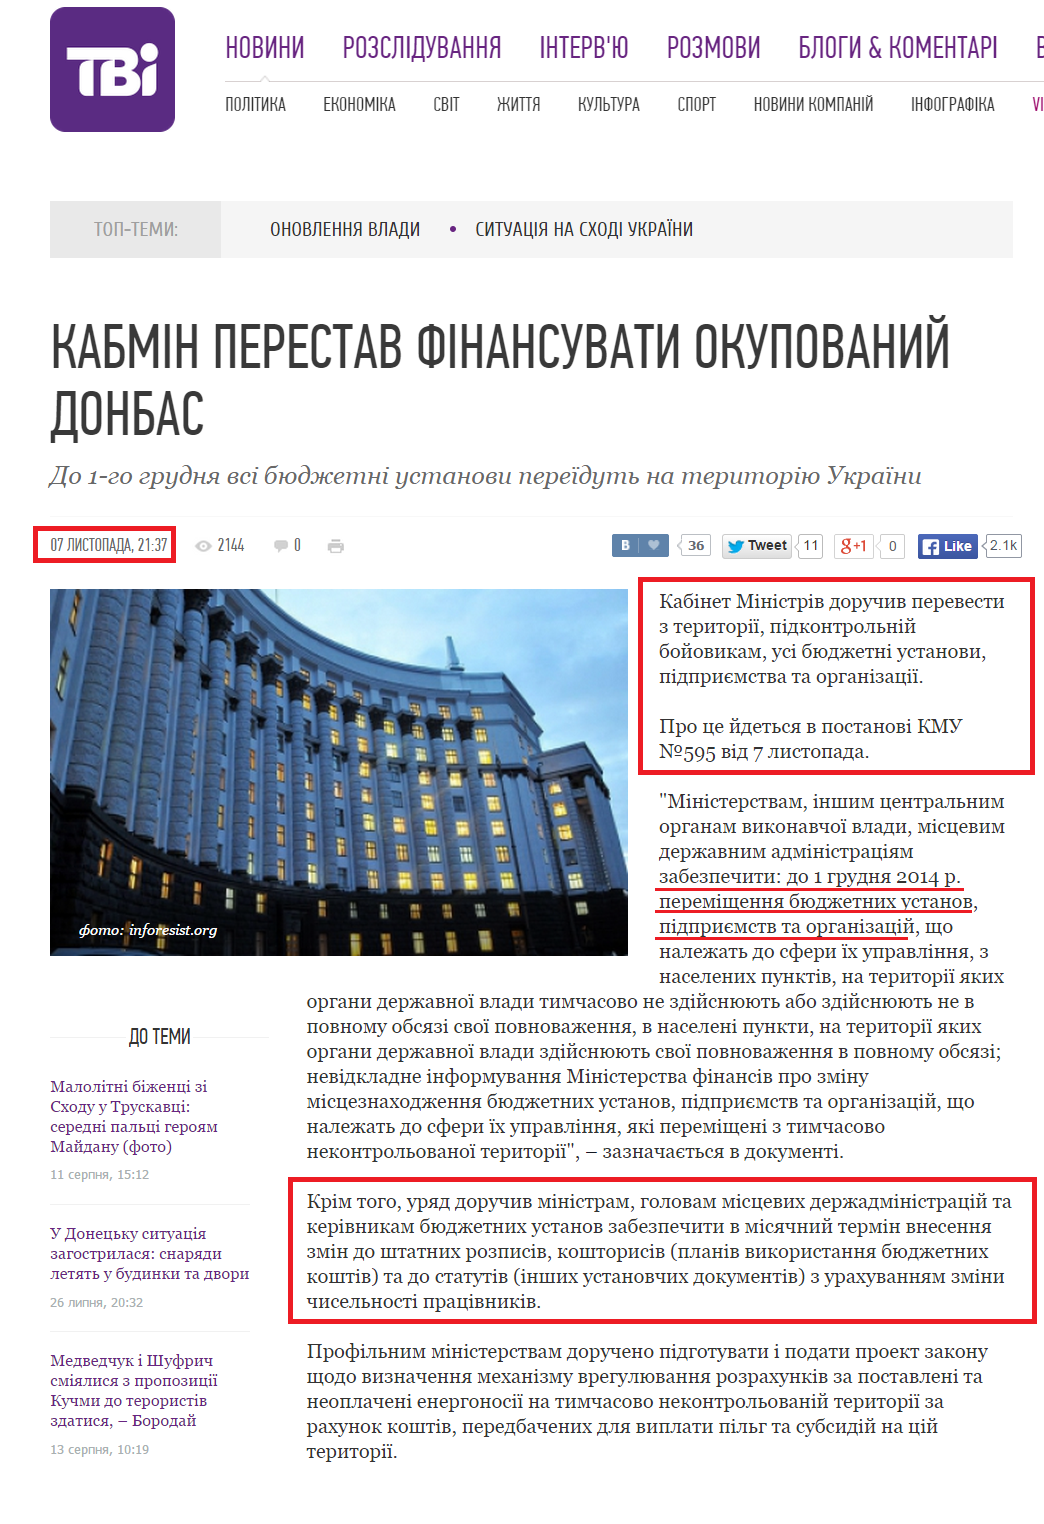 http://tvi.ua/new/2014/11/07/z_okupovanoho_donbasu_vyvezut_vsi_byudzhetni_ustanovy